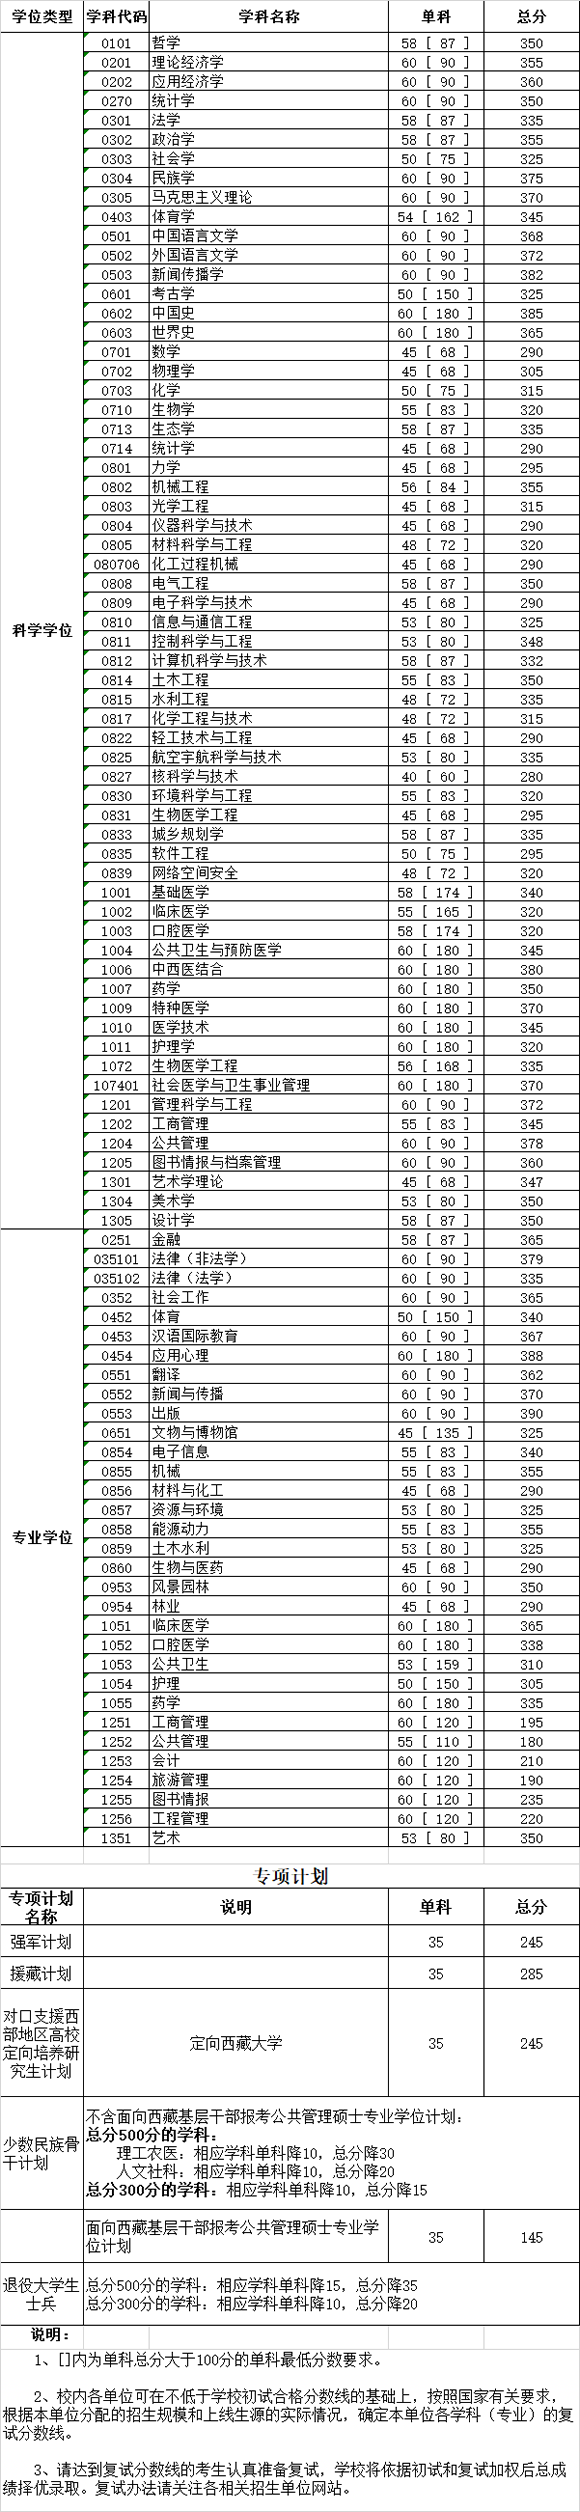 四川大学2020考研复试合格分数线